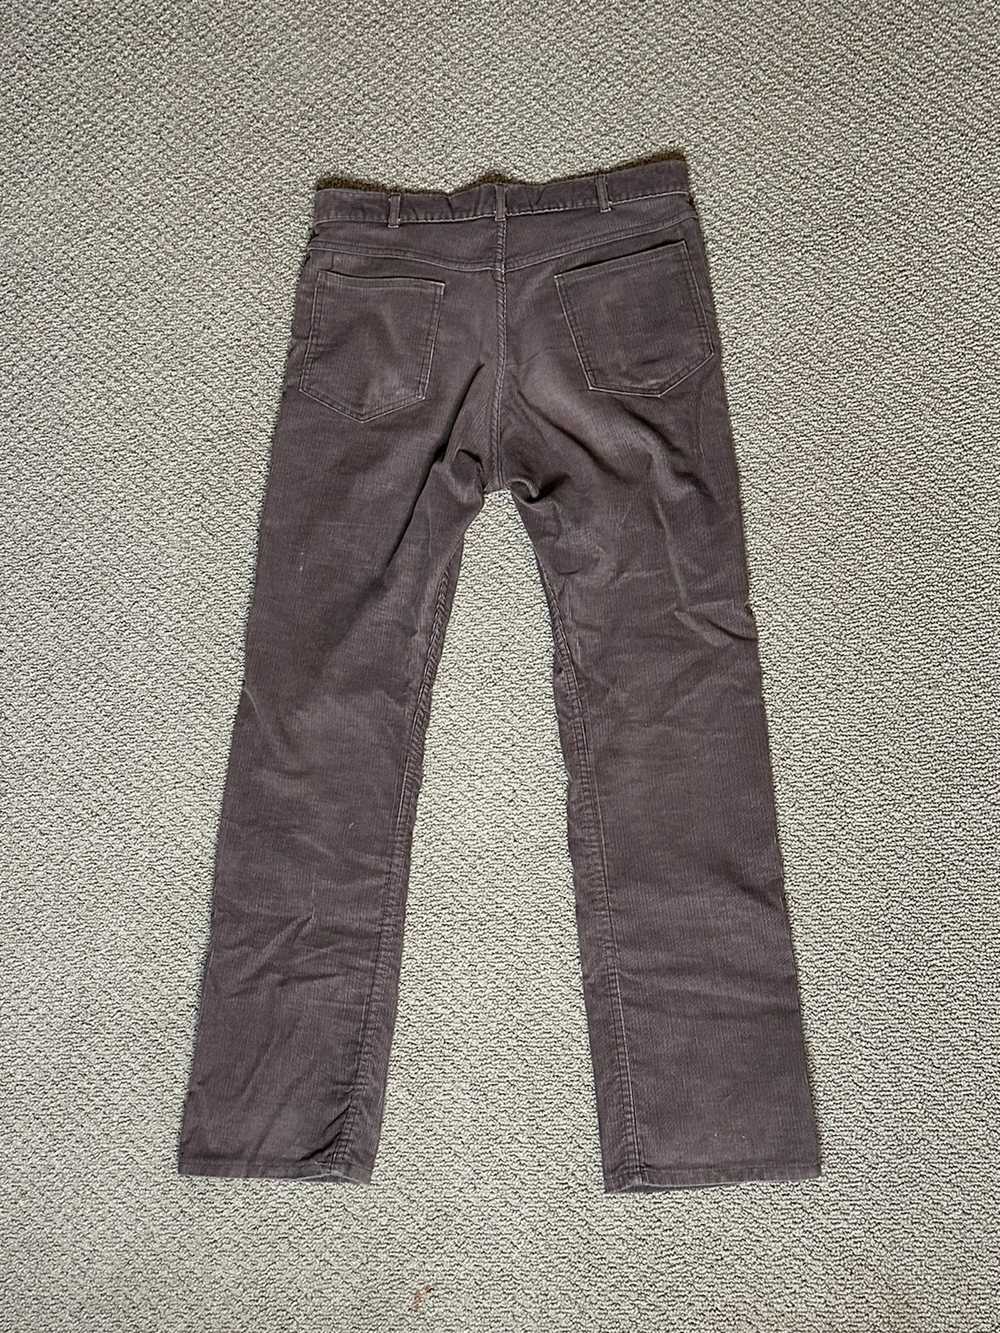 Vintage Vintage Brown Corduroy Pants - image 2